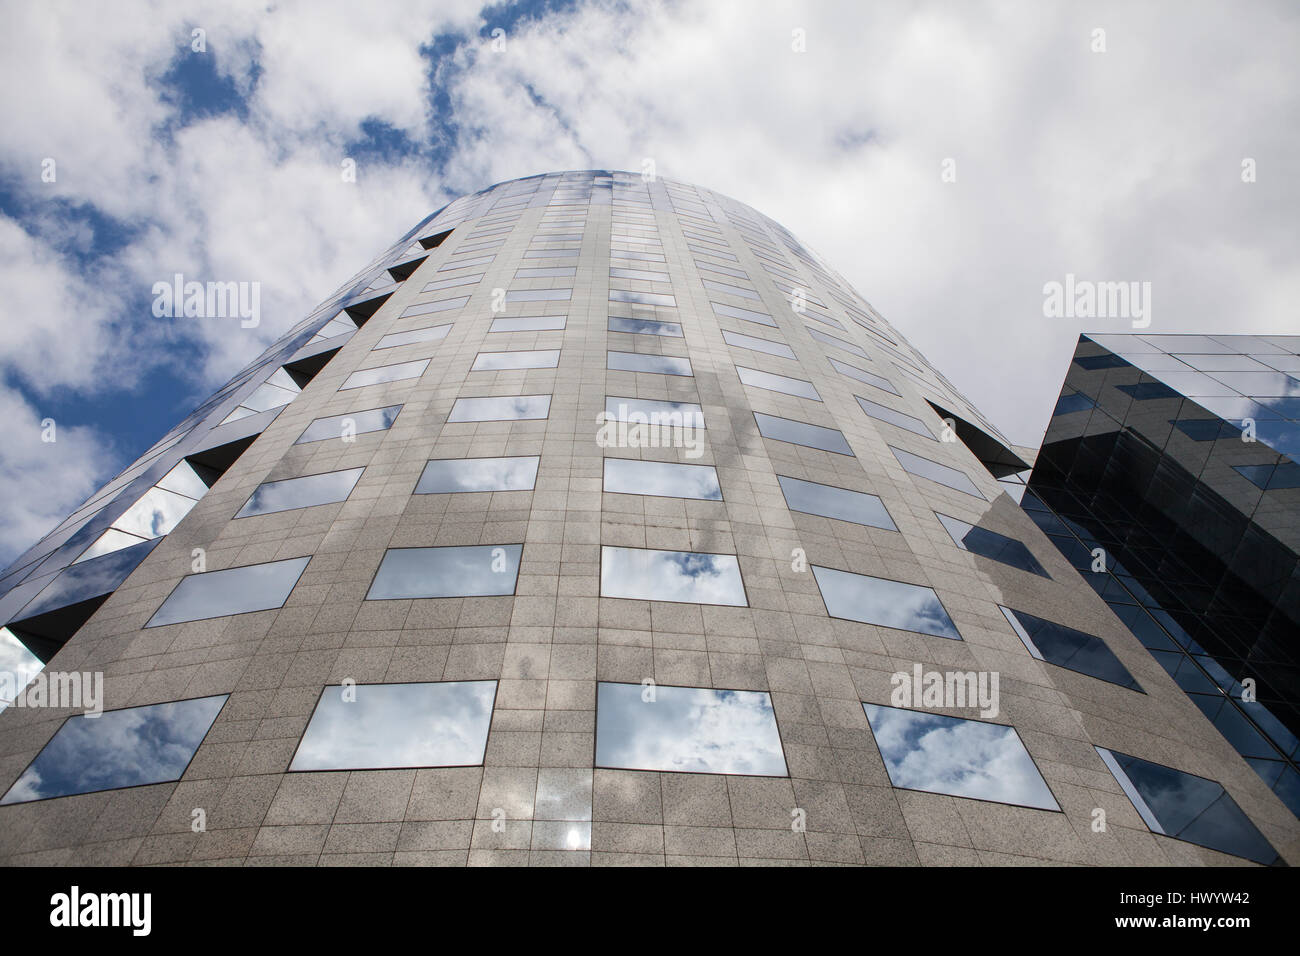 Skycraper architectural glass building Stock Photo